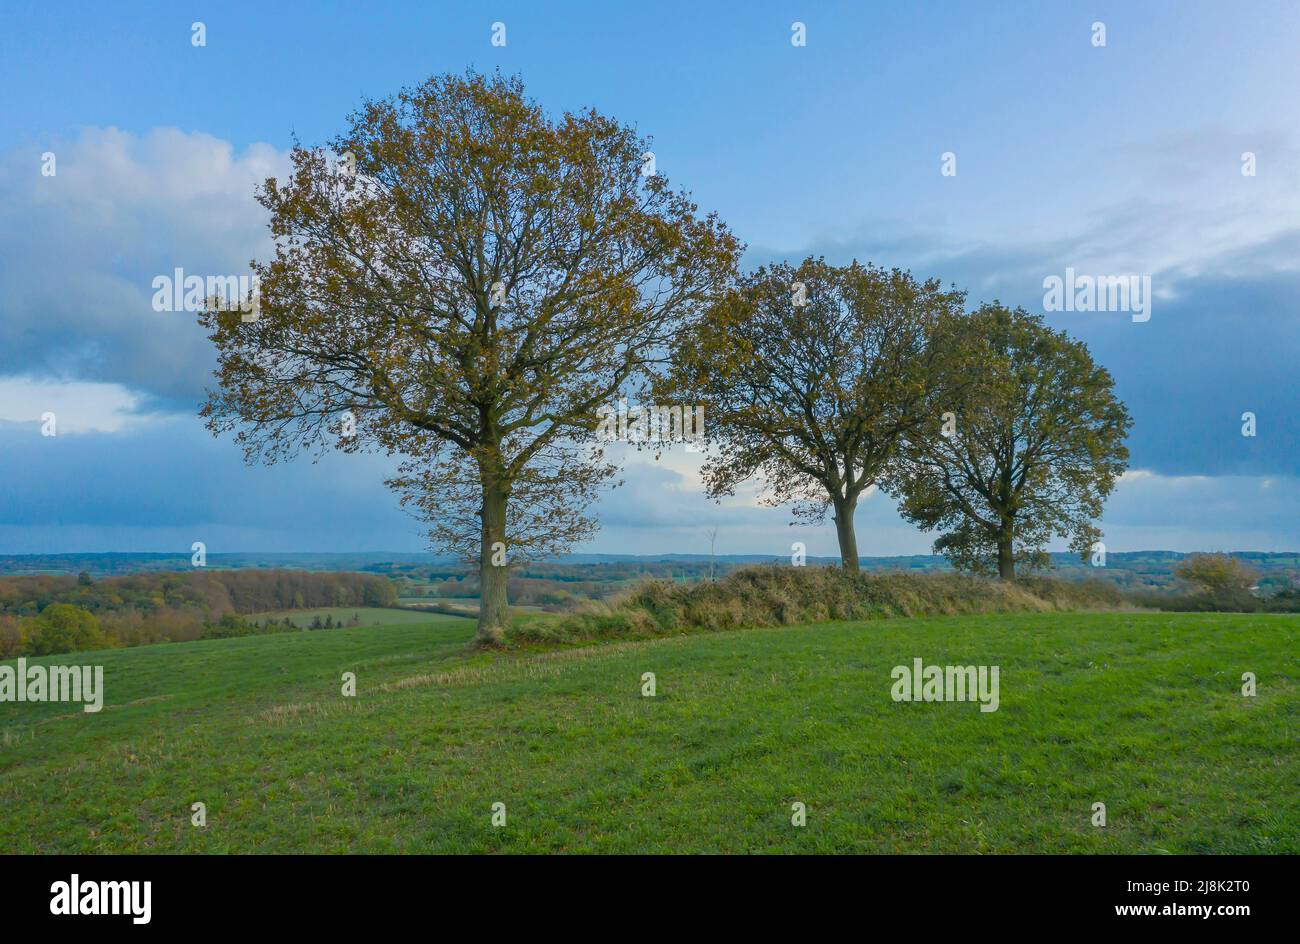 common oak, pedunculate oak, English oak (Quercus robur, Quercus pedunculata), Cultural landscape with Gurlitt oak, Germany, Schleswig-Holstein Stock Photo